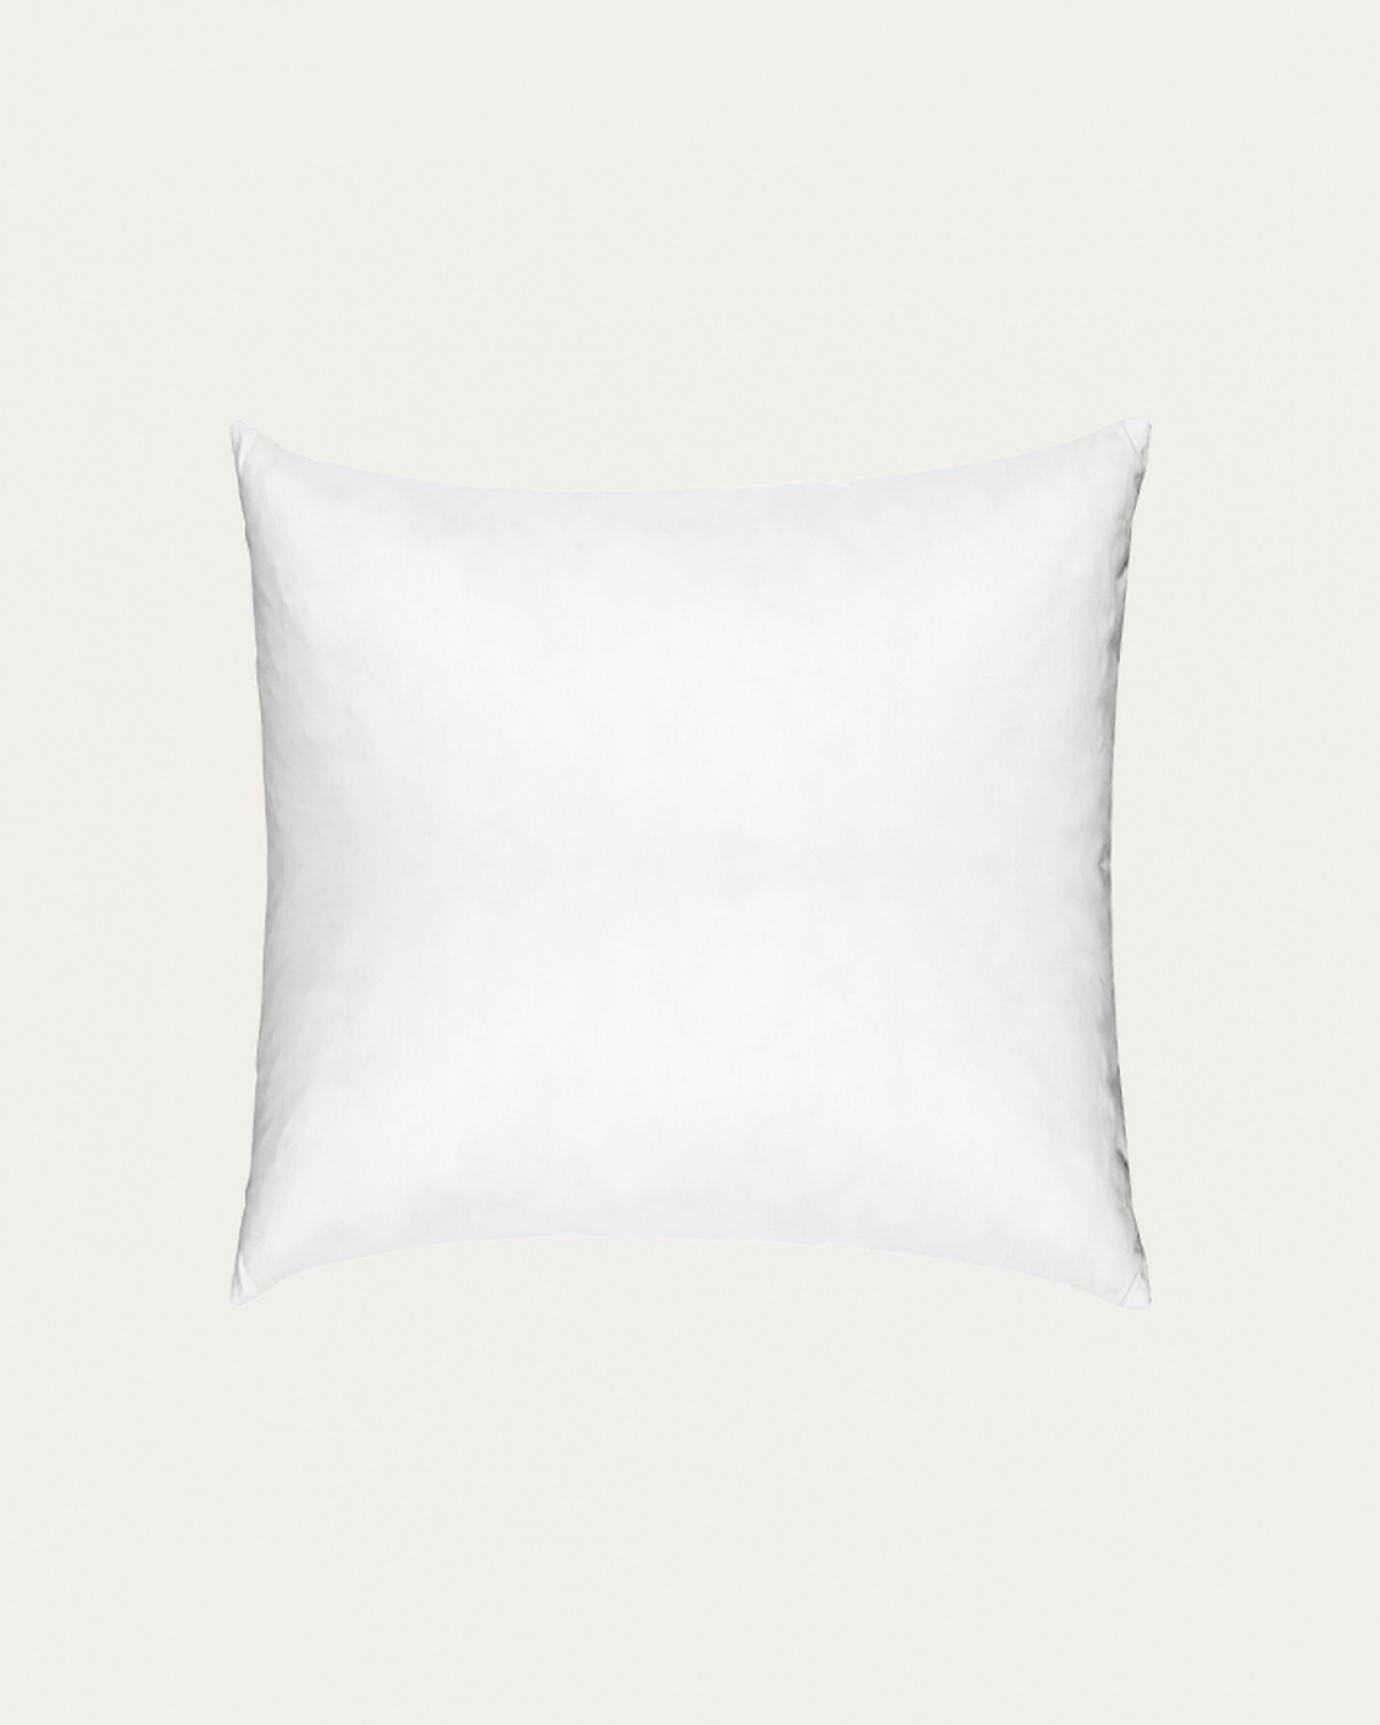 Immagine prodotto bianco SYNTHETIC cuscini interni in cotone con imbottitura in poliestere di LINUM DESIGN. Dimensioni 40x40 cm.